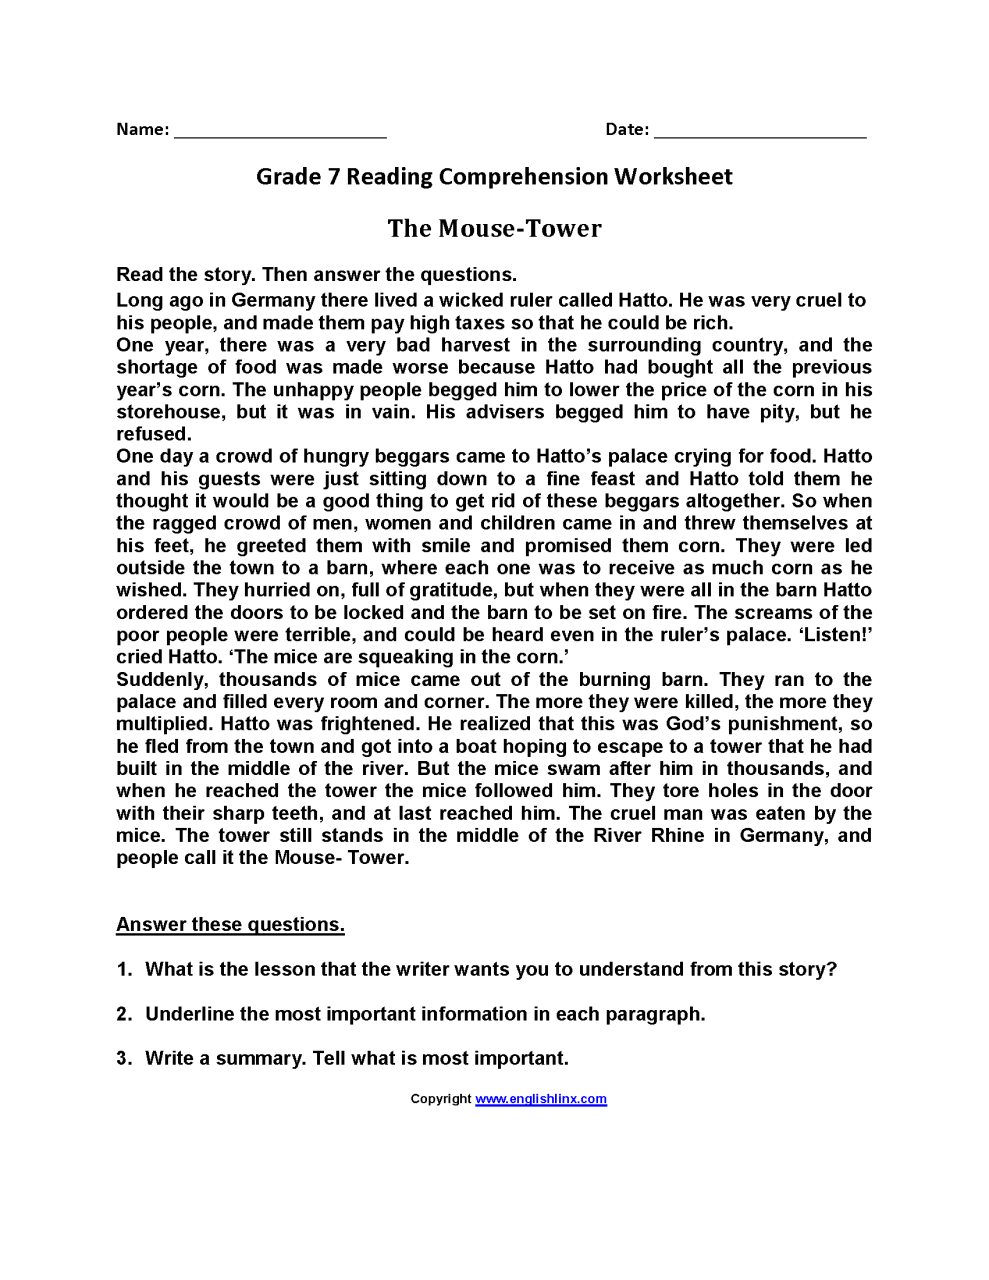 reading-comprehension-worksheets-for-7th-graders-thekidsworksheet